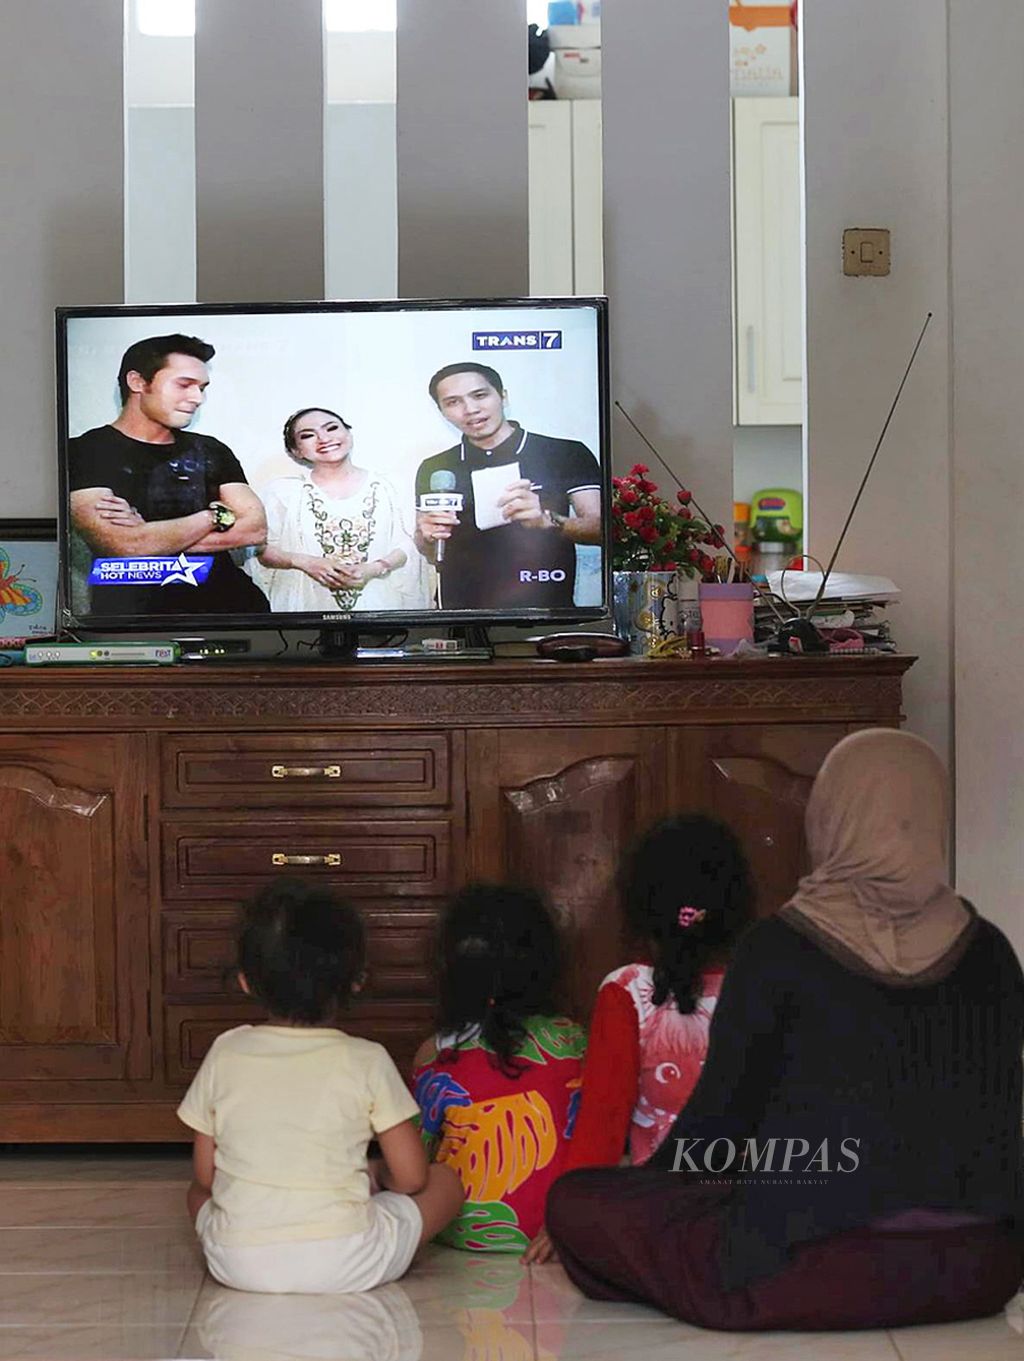 Warga menonton tayangan televisi di rumahnya di Pondok Karya, Tangerang Selatan, Selasa (23/6). Survei Komisi Penyiaran Indonesia (KPI) pada Maret-April 2015 menyebutkan beberapa program acara televisi di sejumlah stasiun televisi kualitasnya masih rendah.